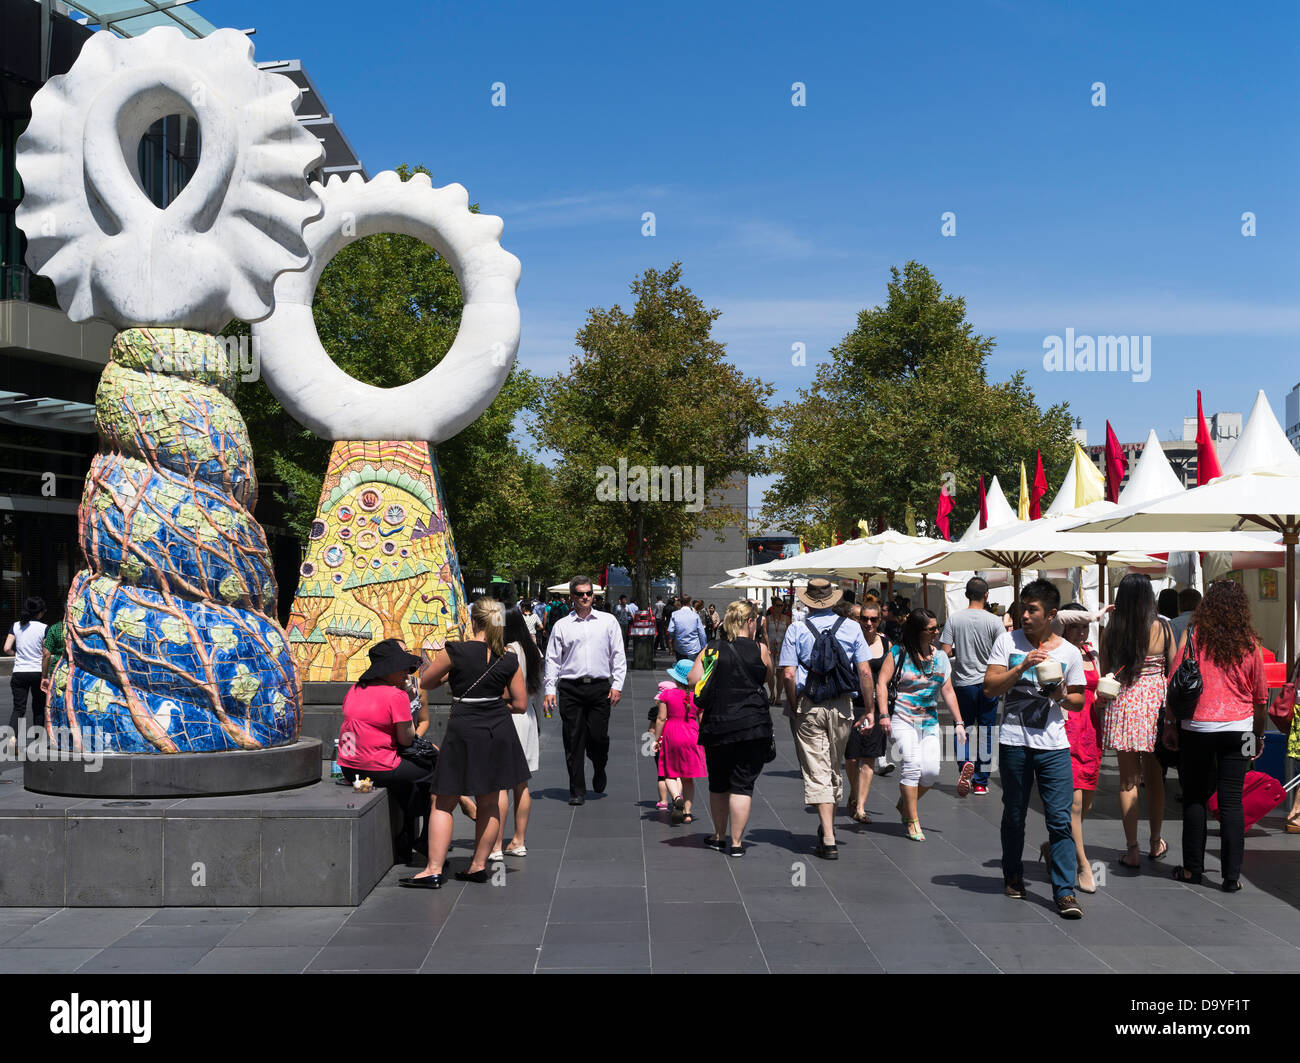 dh Yarra Promenade ville MELBOURNE AUSTRALIE foules marchant dans le nouvel an chinois et l'Asie stands de nourriture promenade foule gens décorations rue Banque D'Images